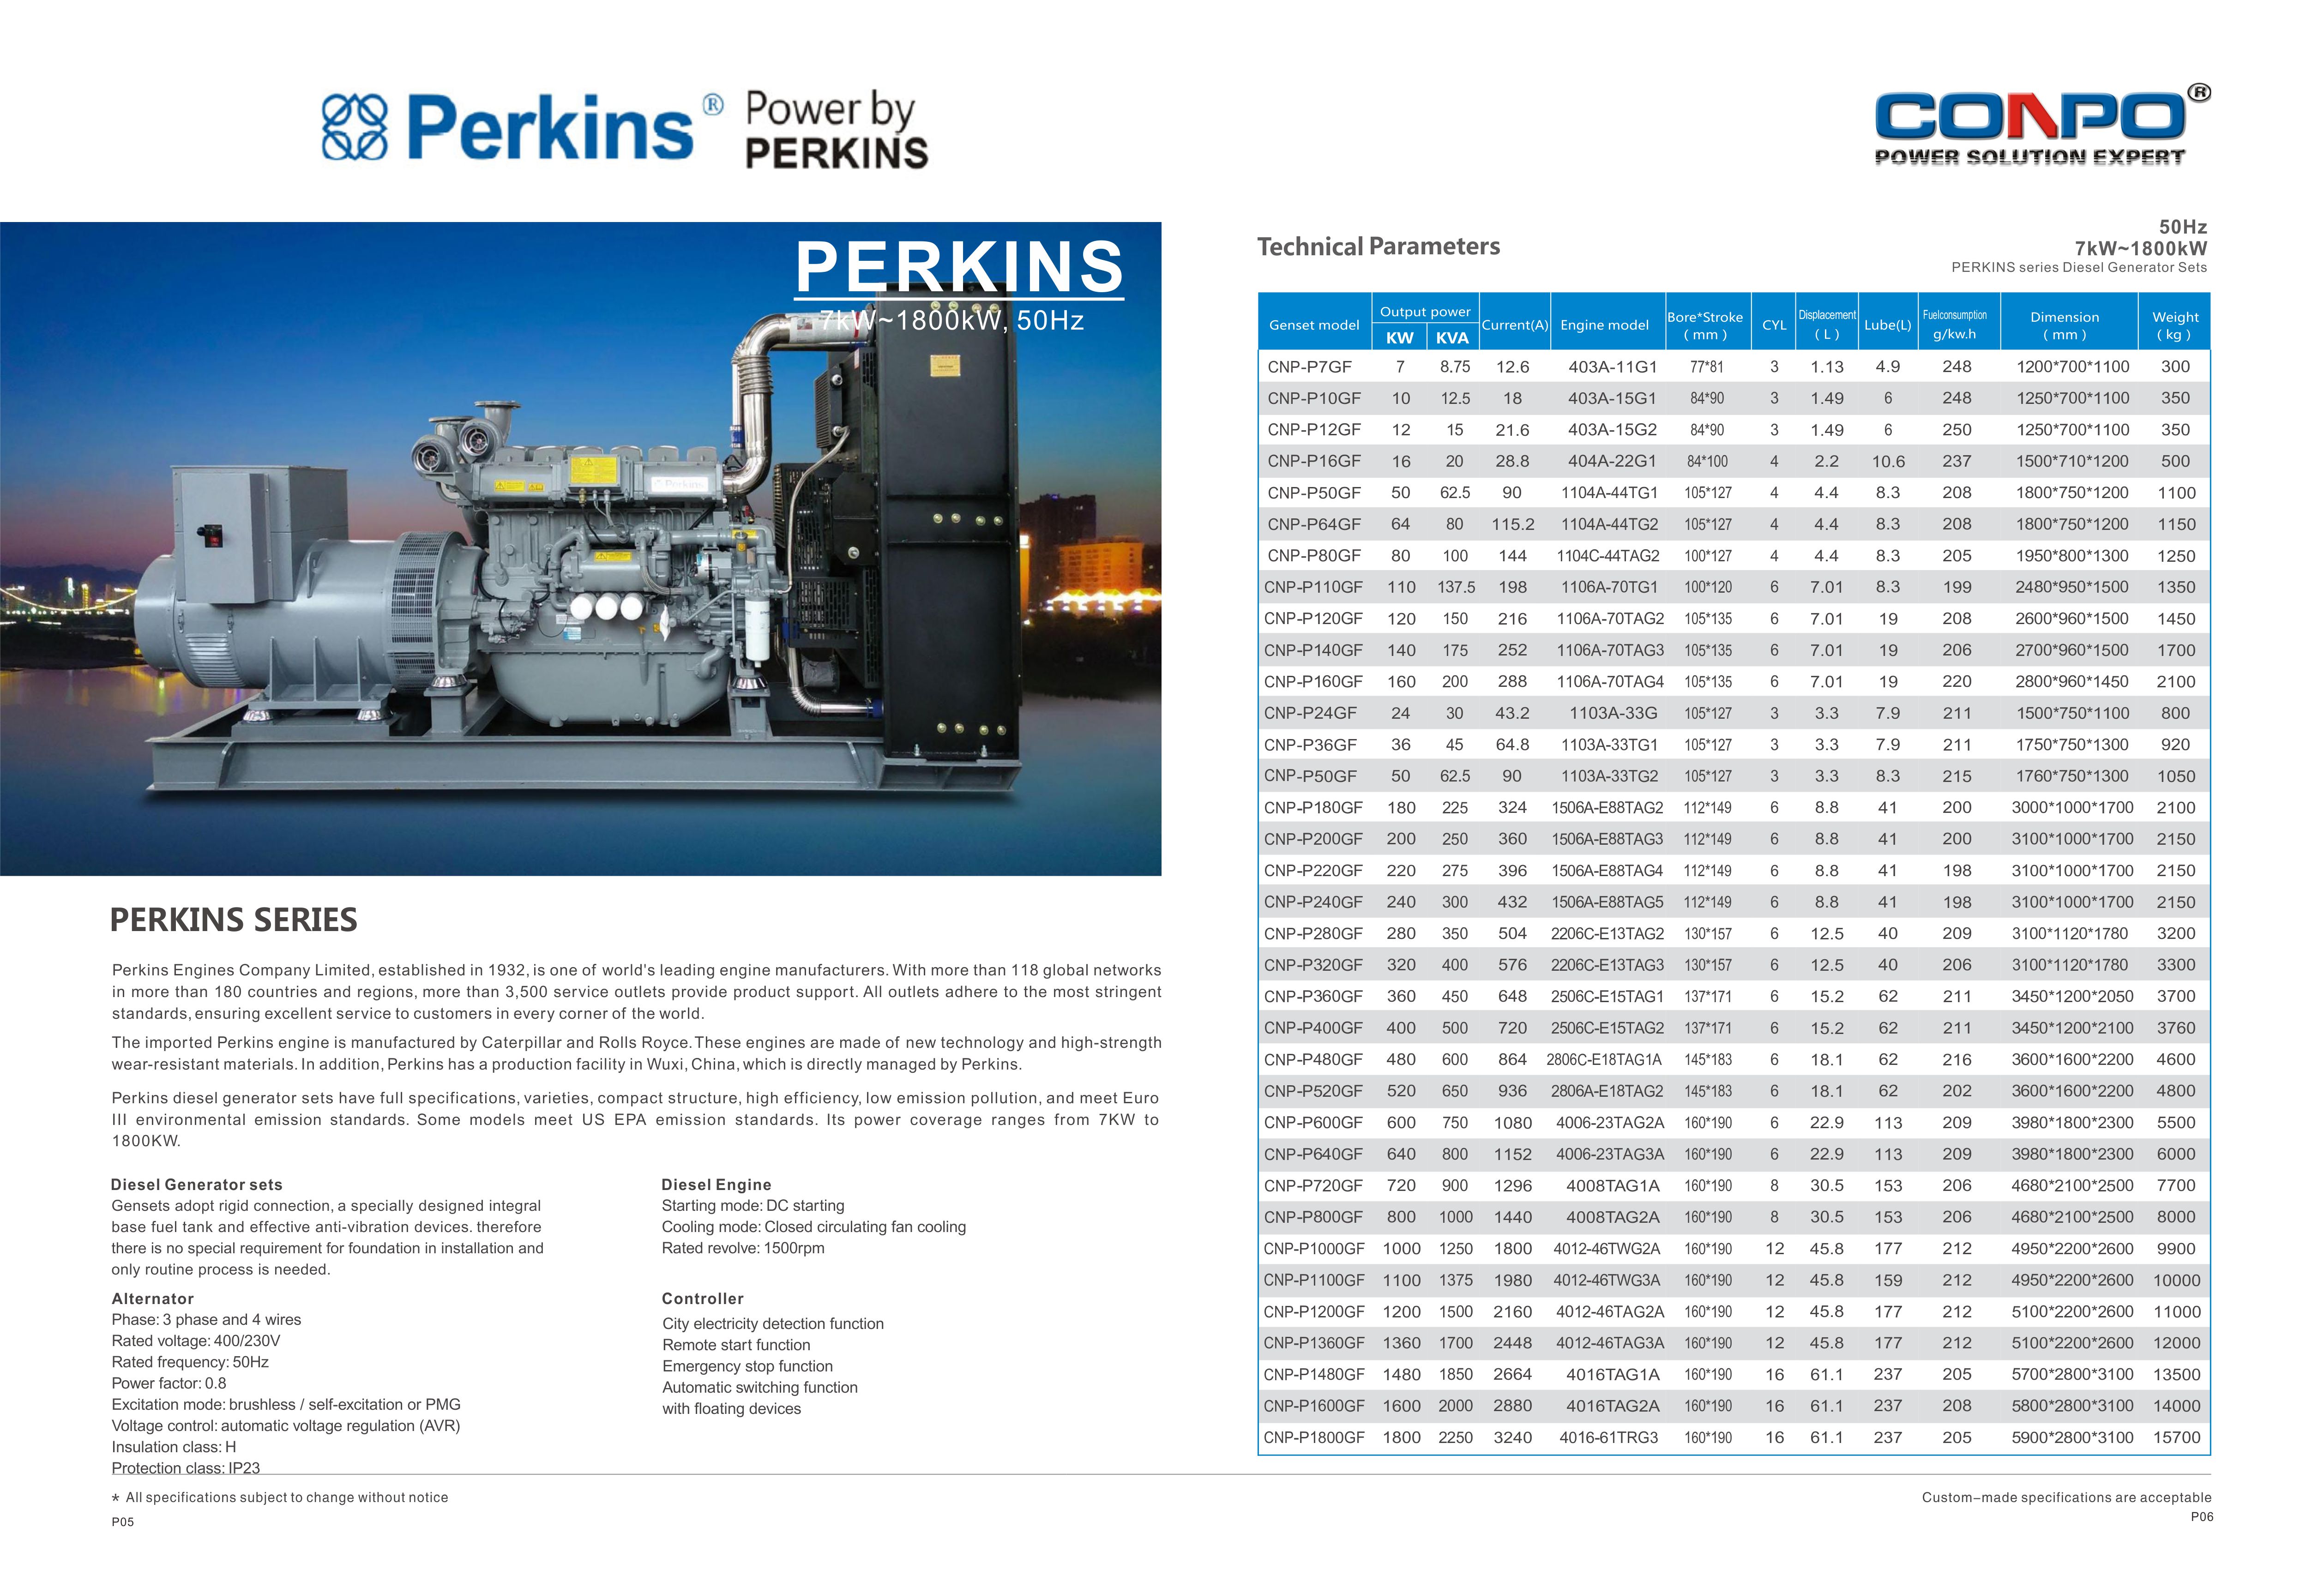 Pekins Diesel Generator 7k~1800kW